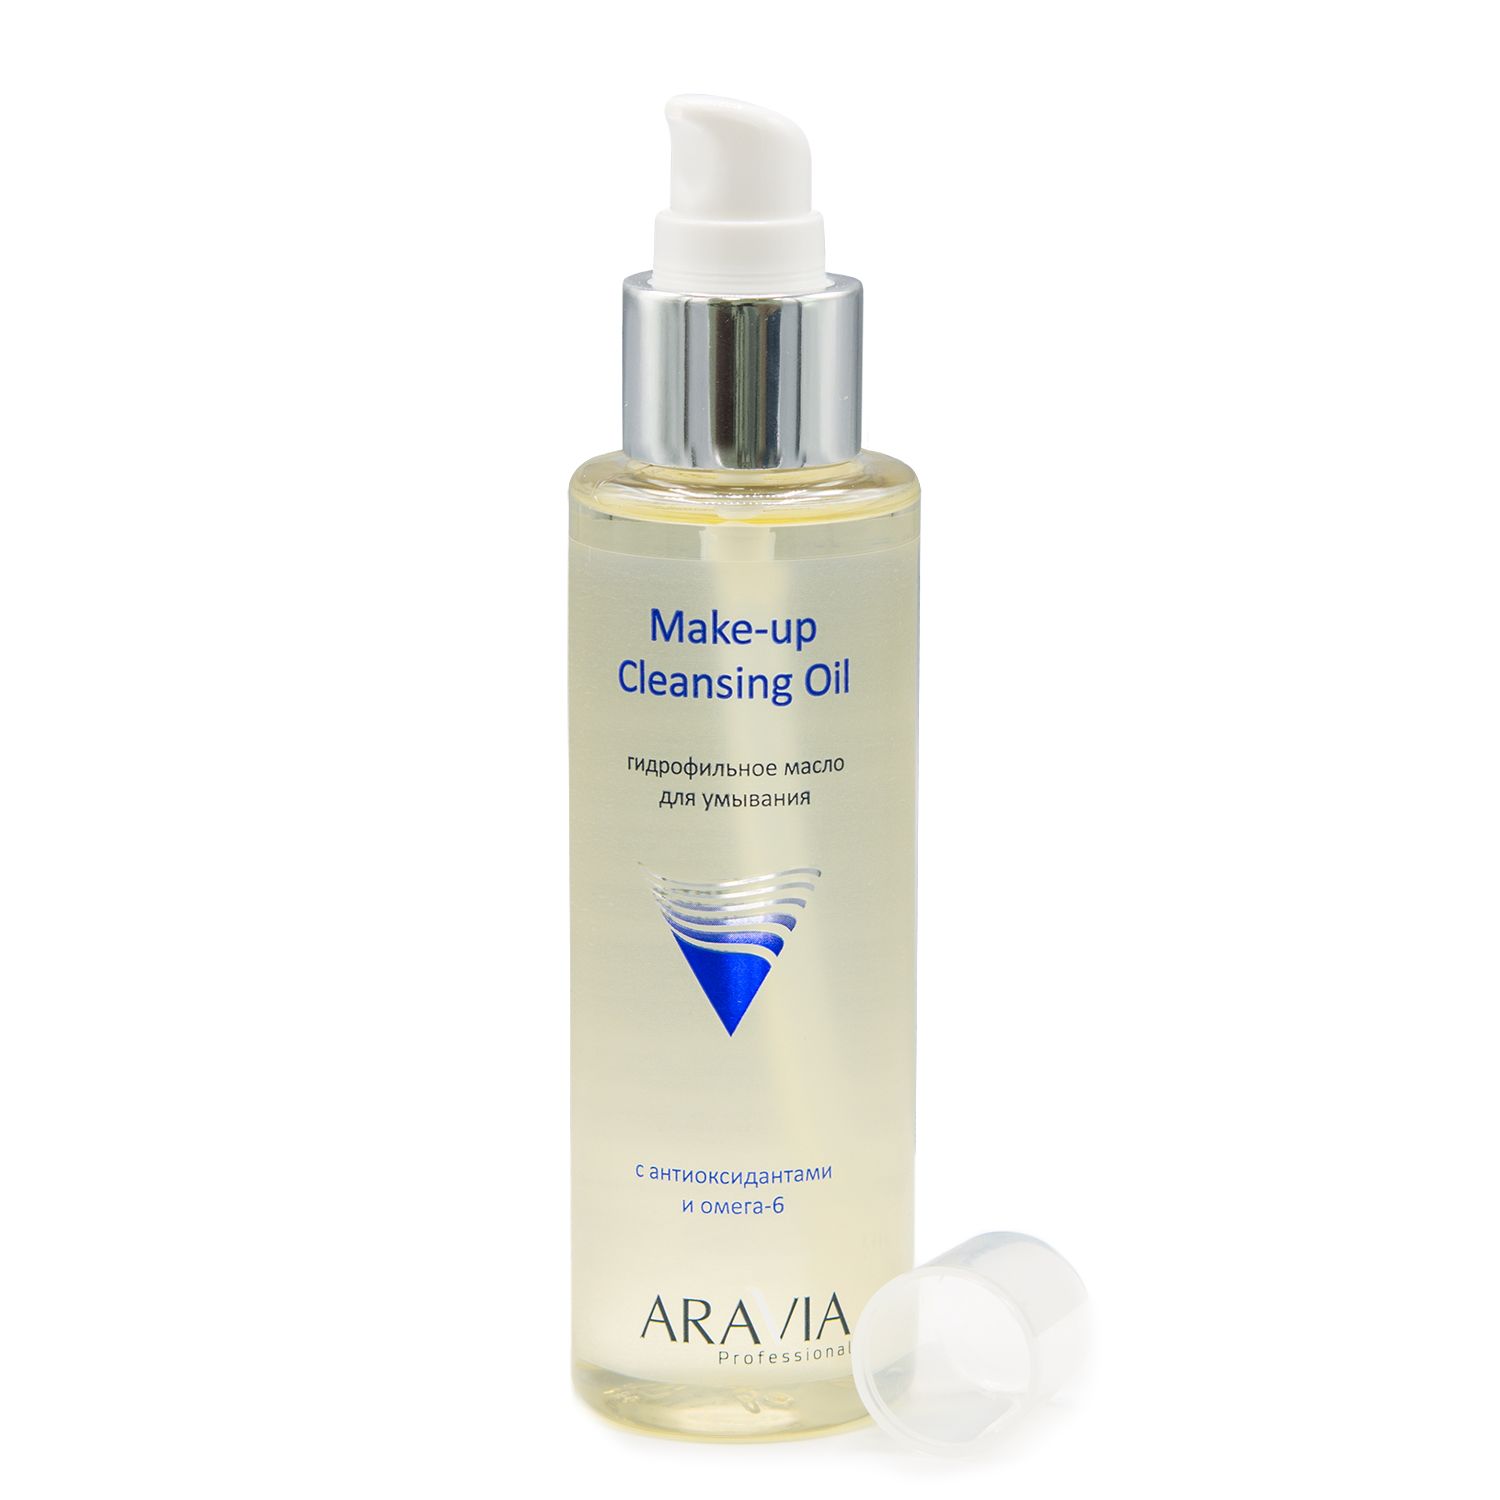 Гидрофильное масло для умывания Make-Up Cleansing Oil с антиоксидантами и омега-6, 110 мл.